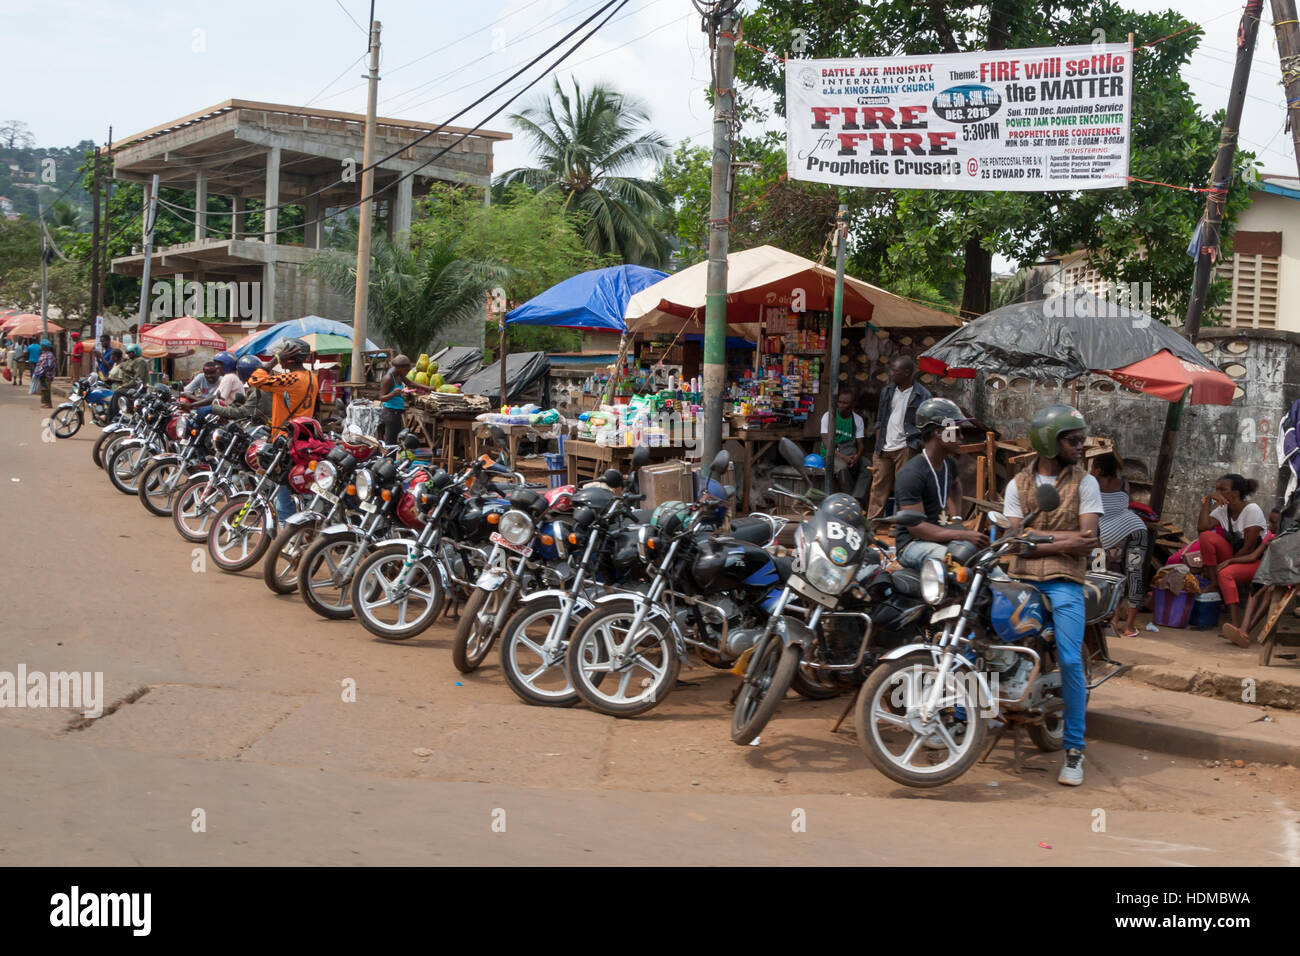 In Afrika werden Motorradtaxis in vielen afrikanischen Ländern Okadas genannt. Sie sind das schnellste und billigste Reisemittel. Stockfoto